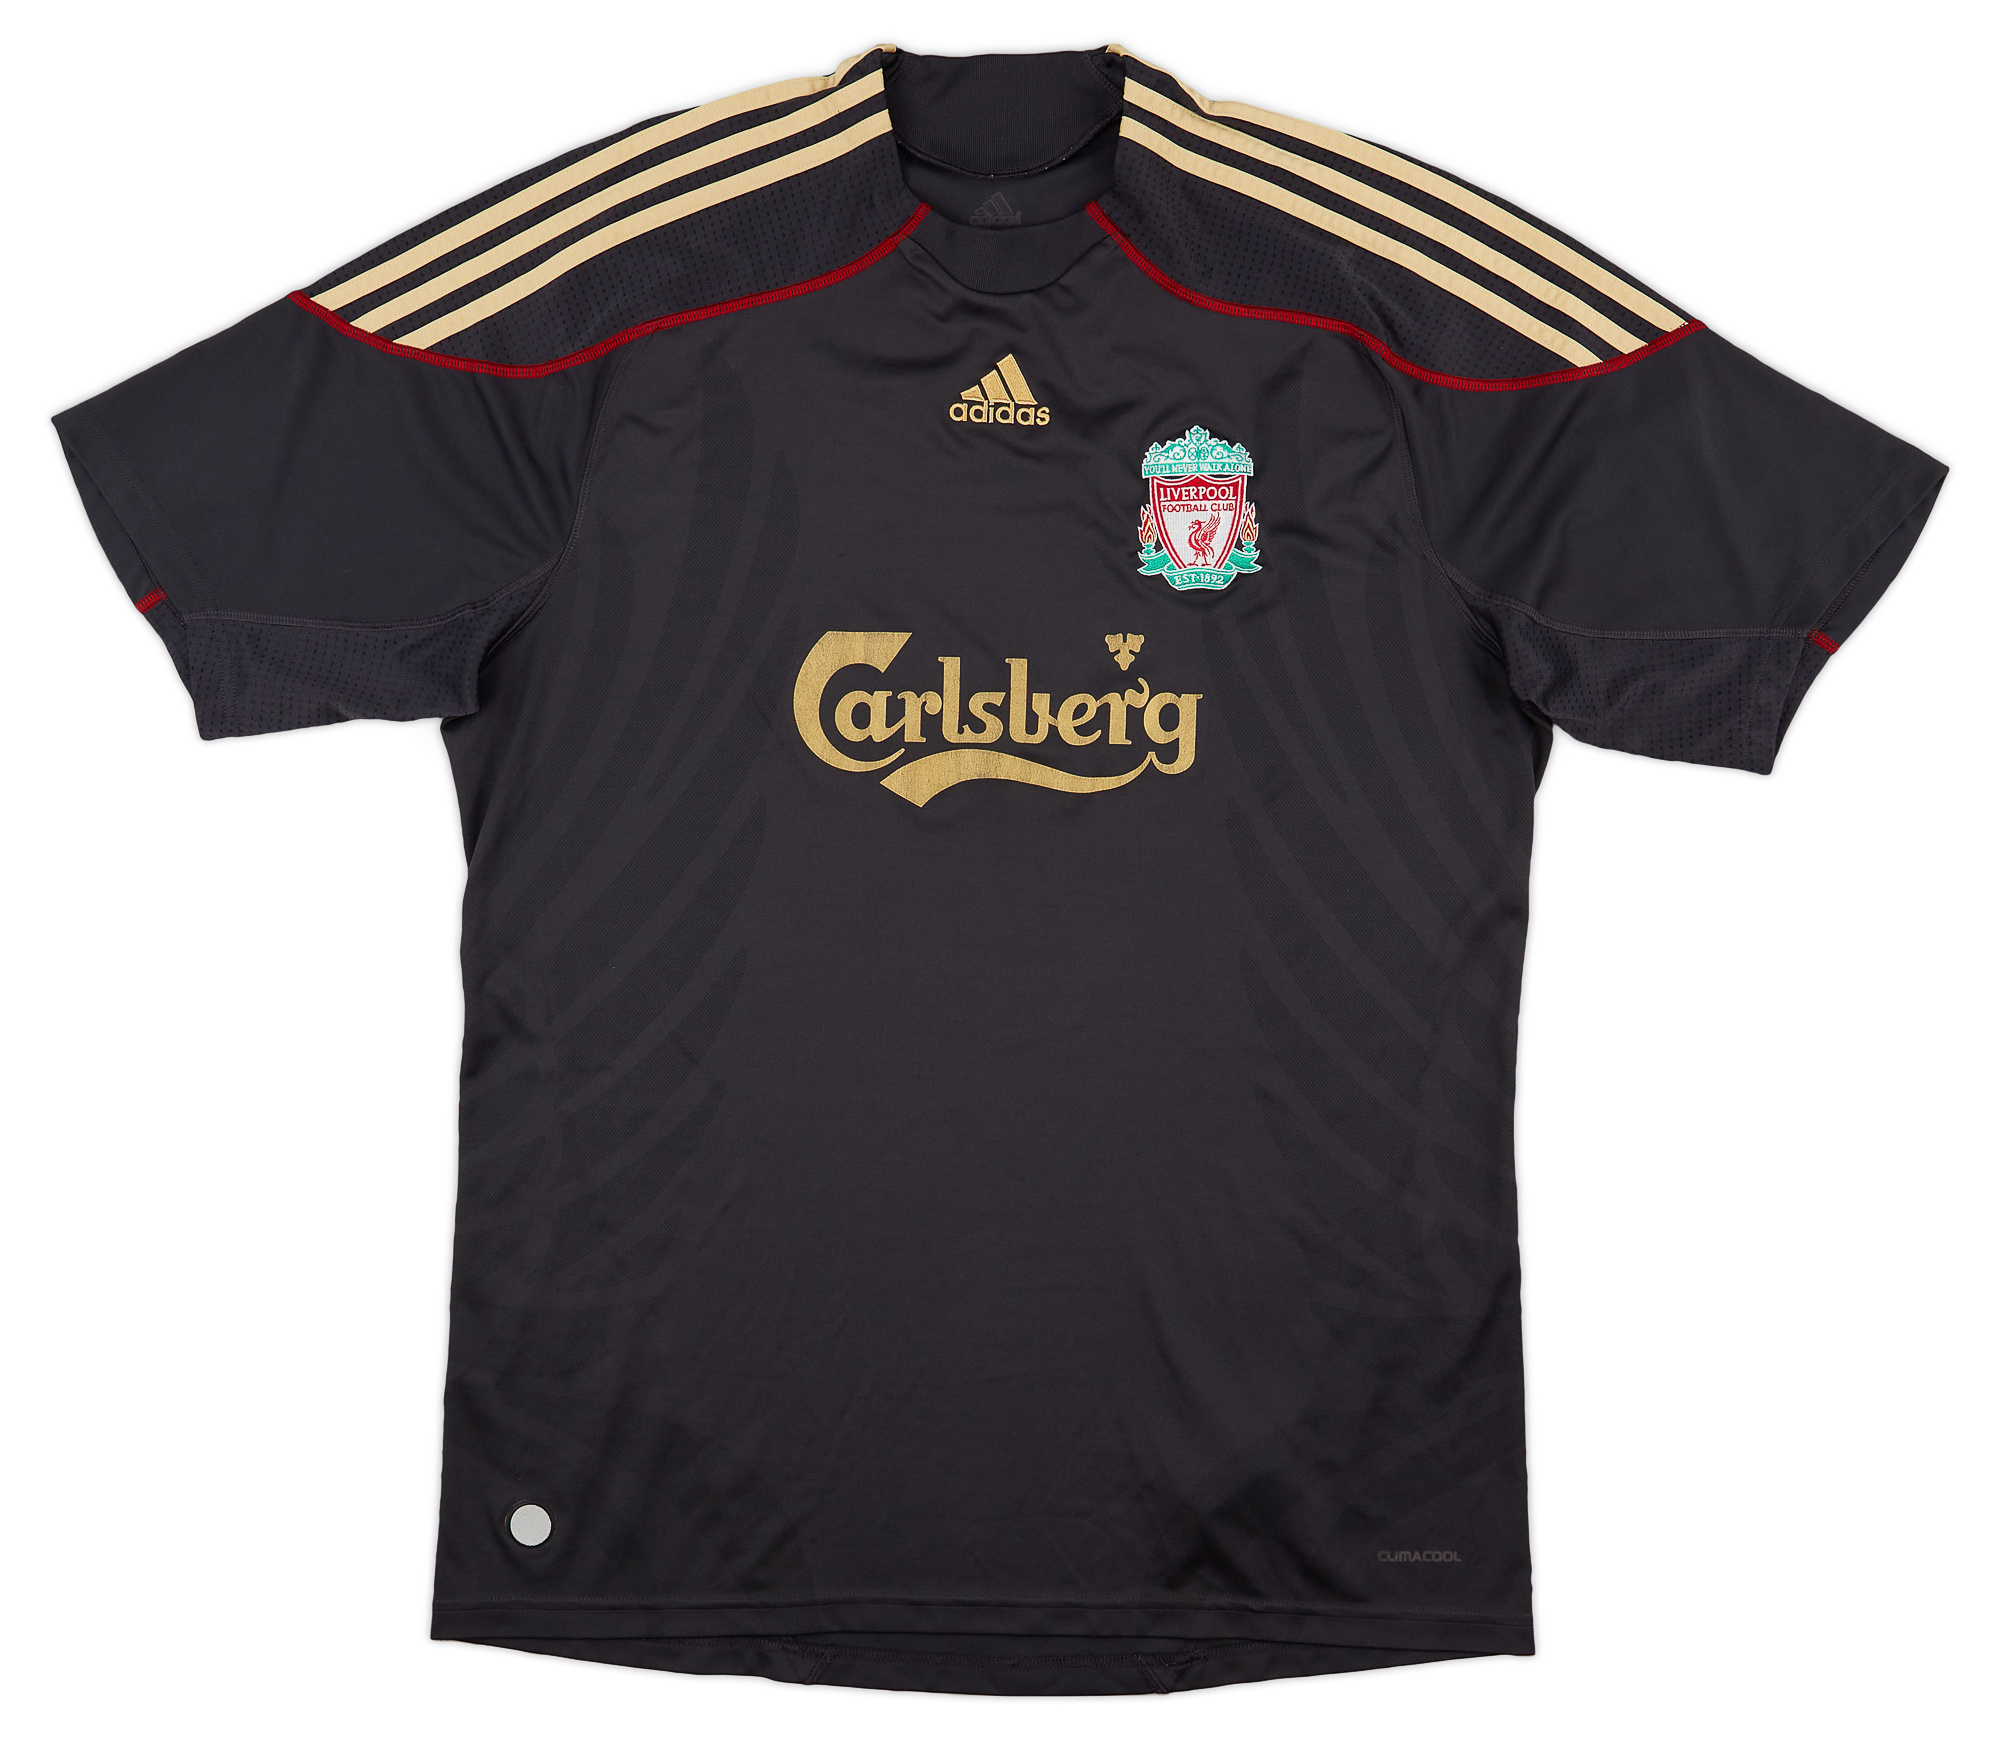 2009-10 Liverpool Away Shirt - Good 5/10 - ()